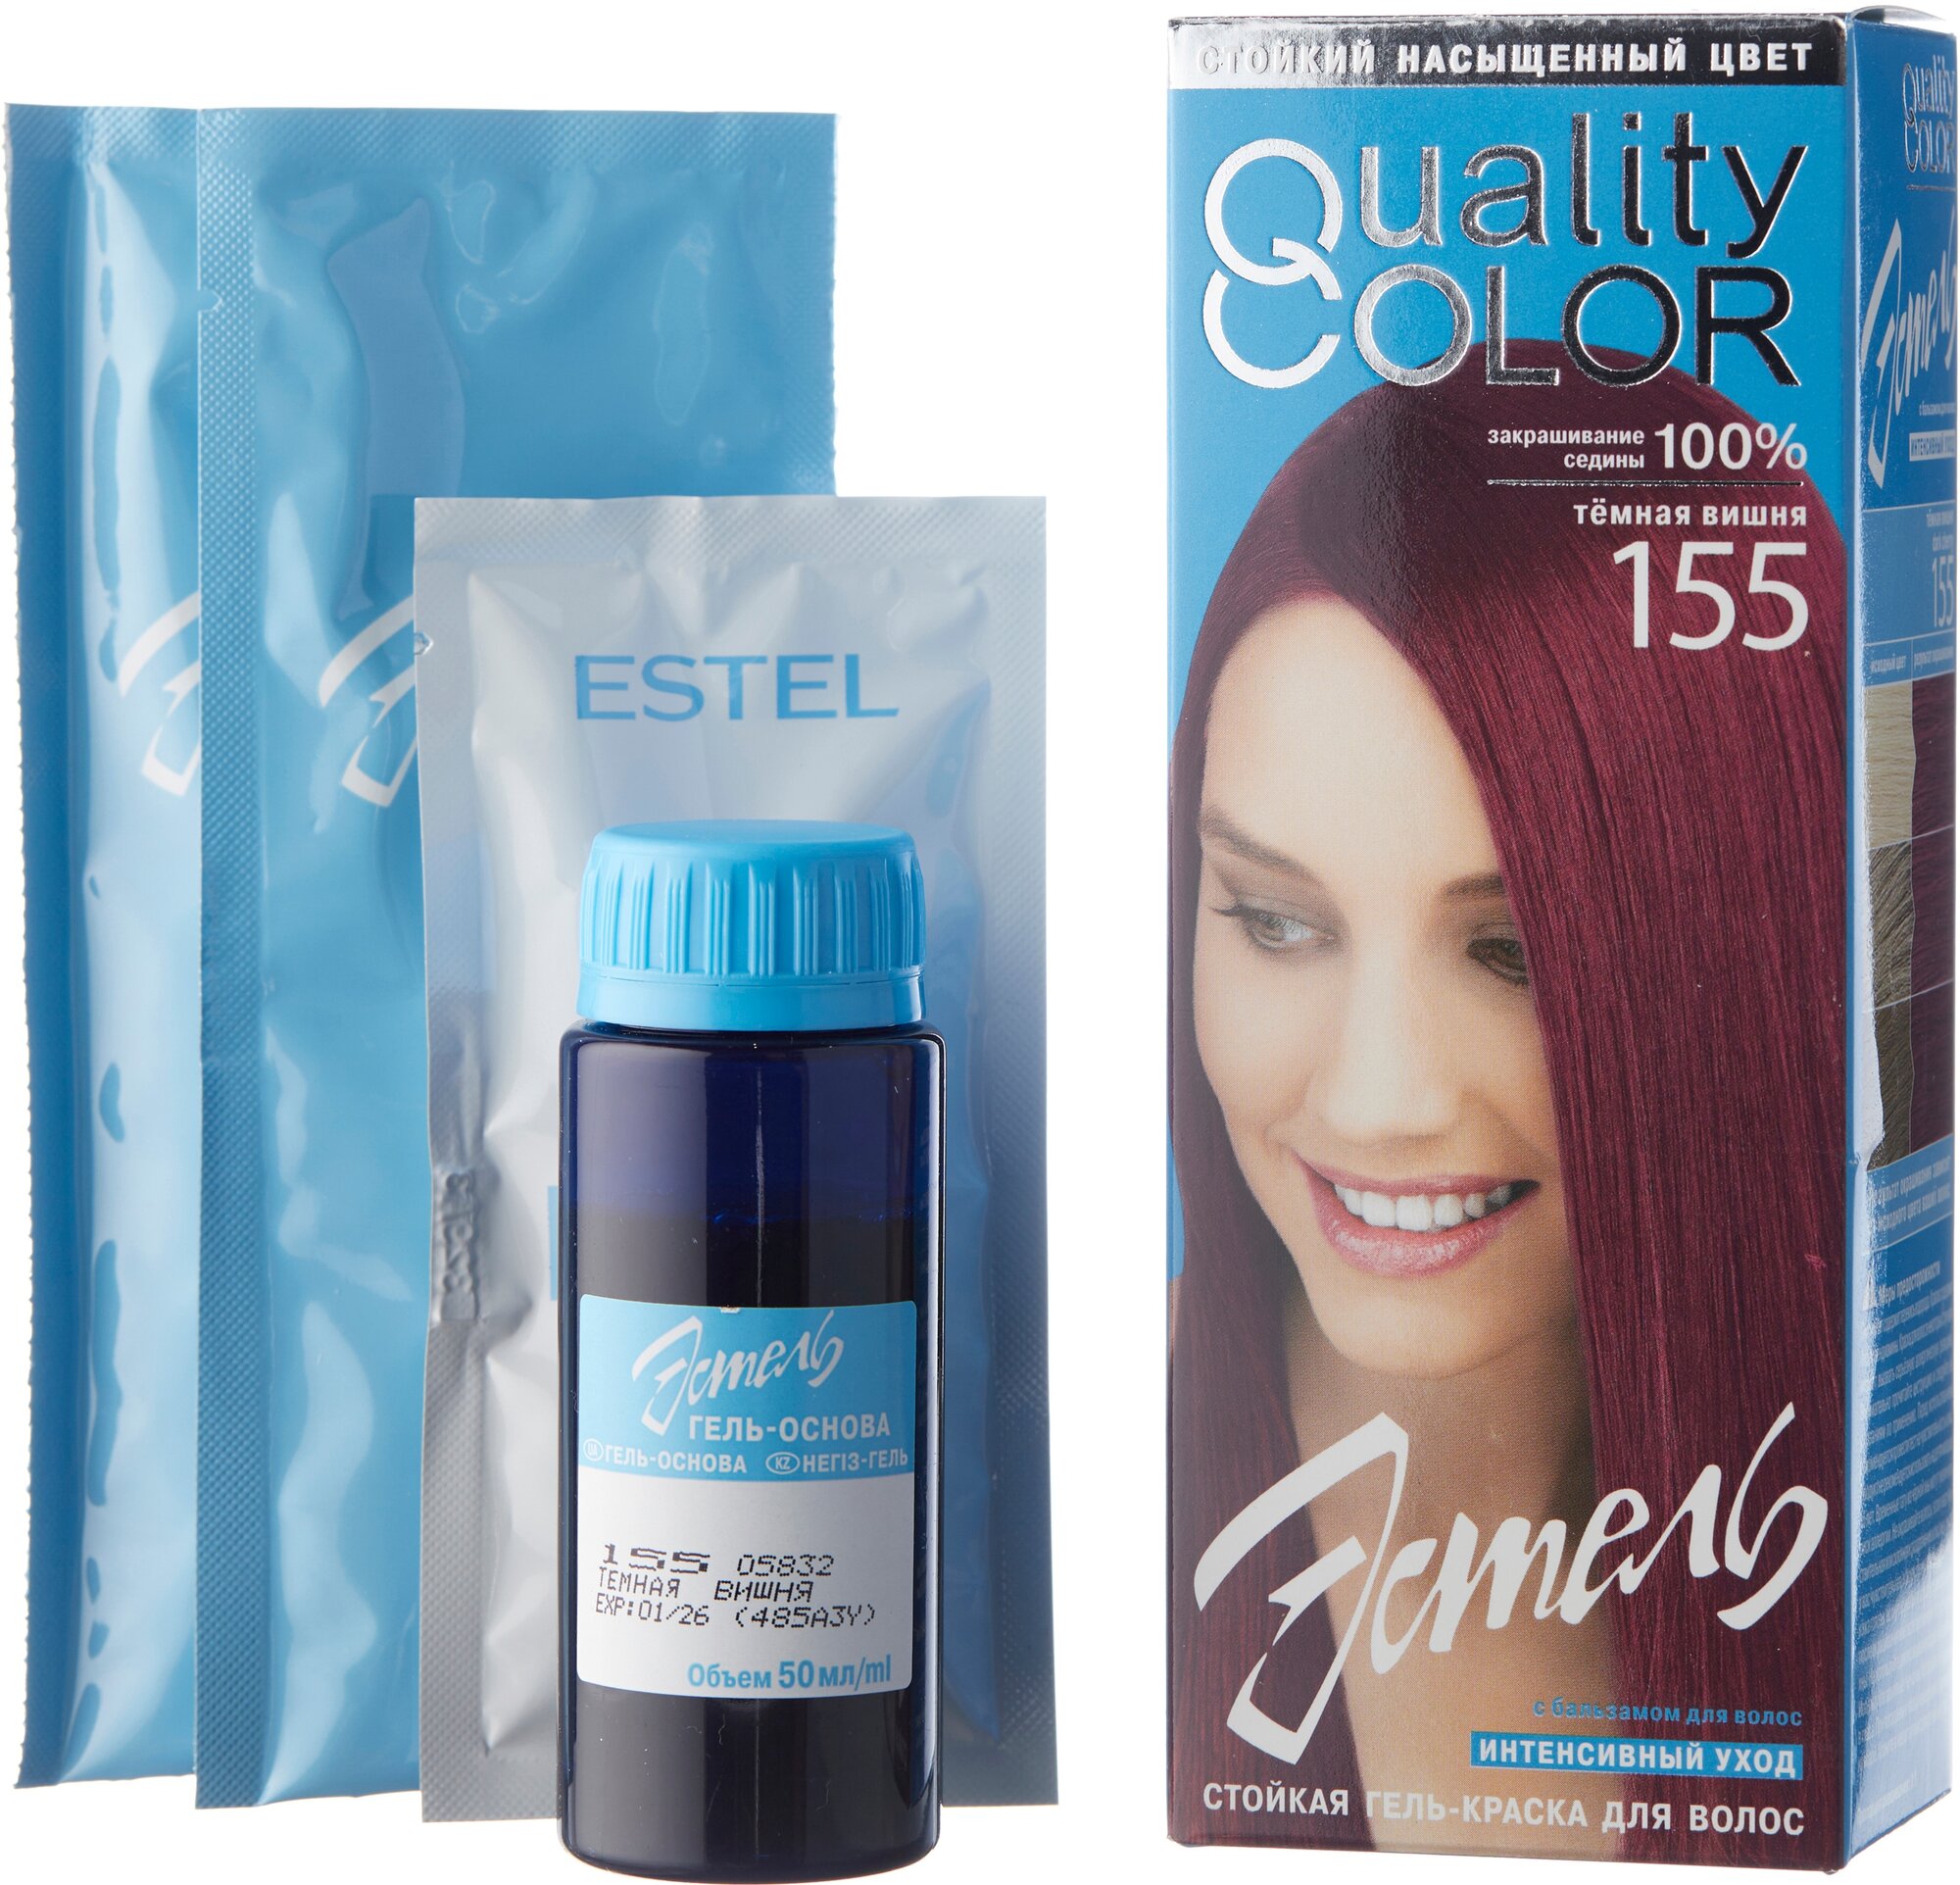 ESTEL Vital Quality Color стойкая гель-краска для волос, 155 темная вишня